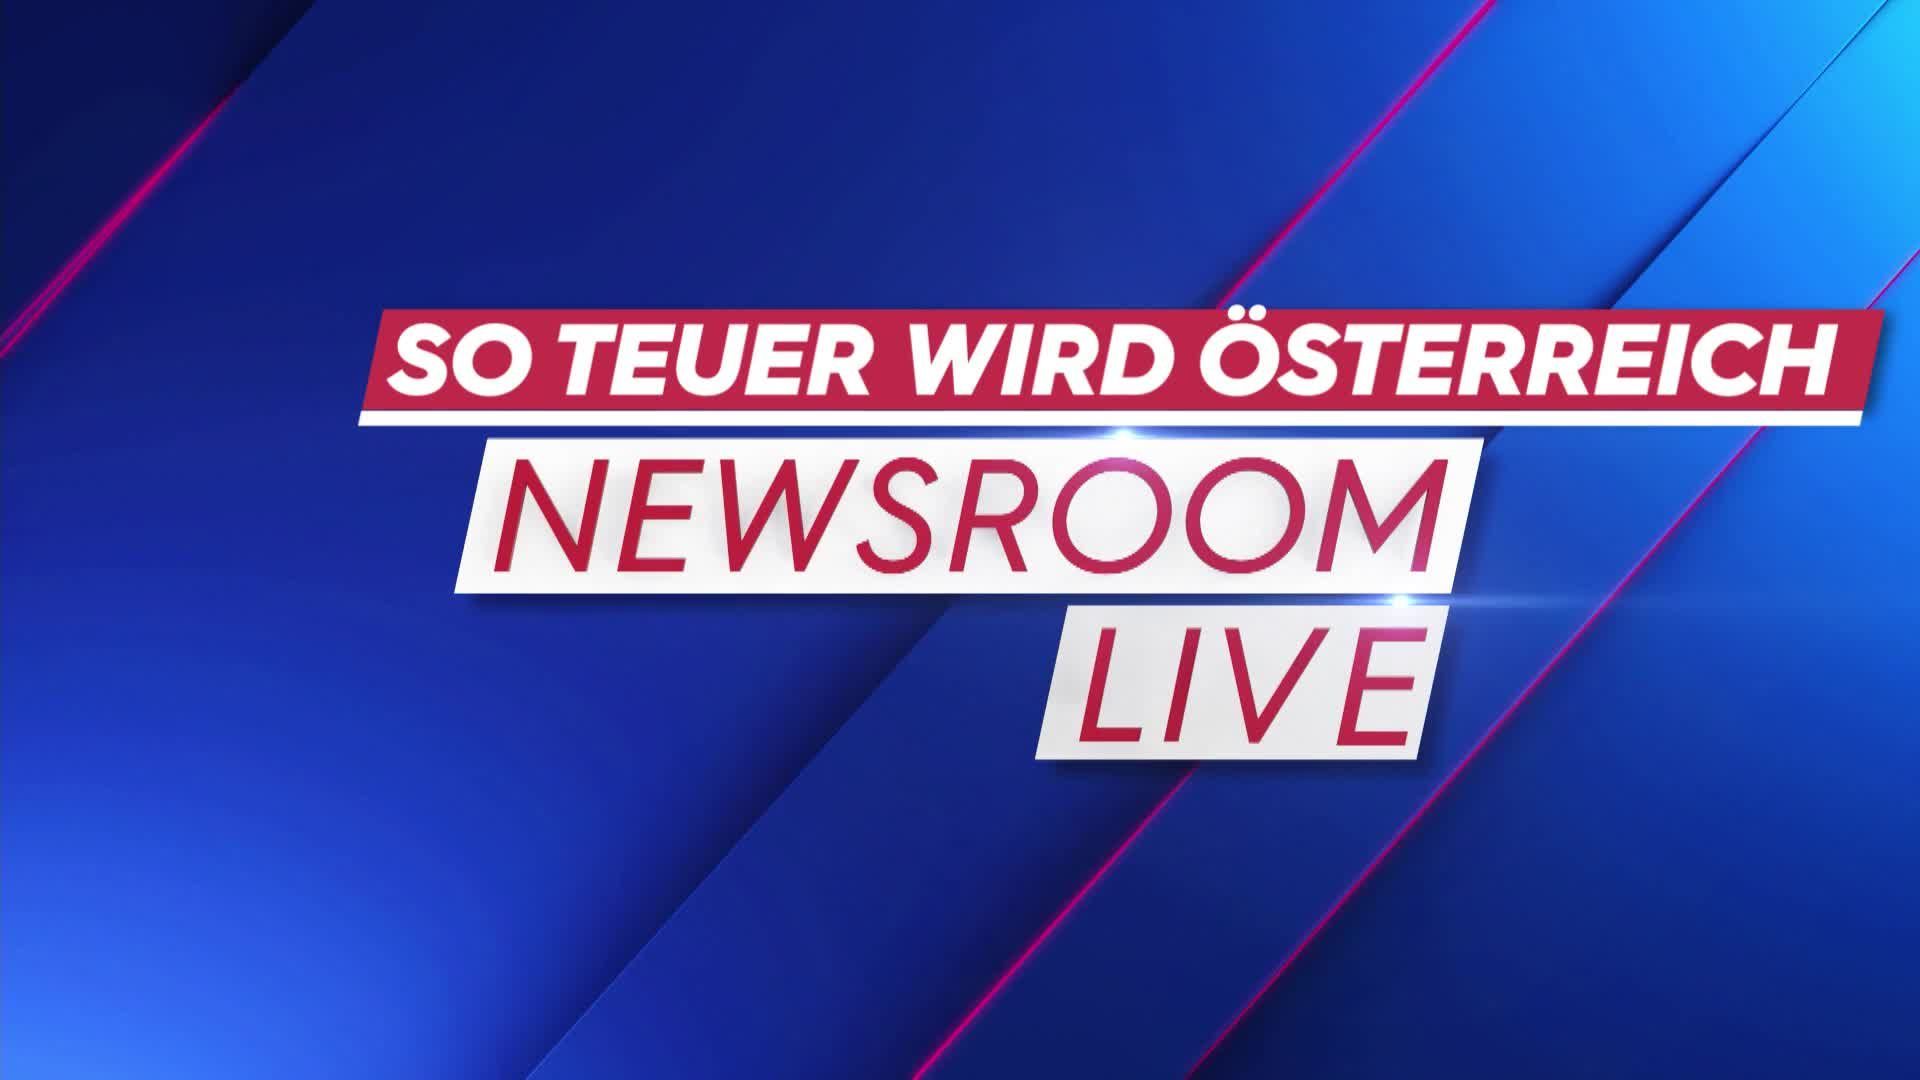 Newsroom LIVE vom 07.04.2022 